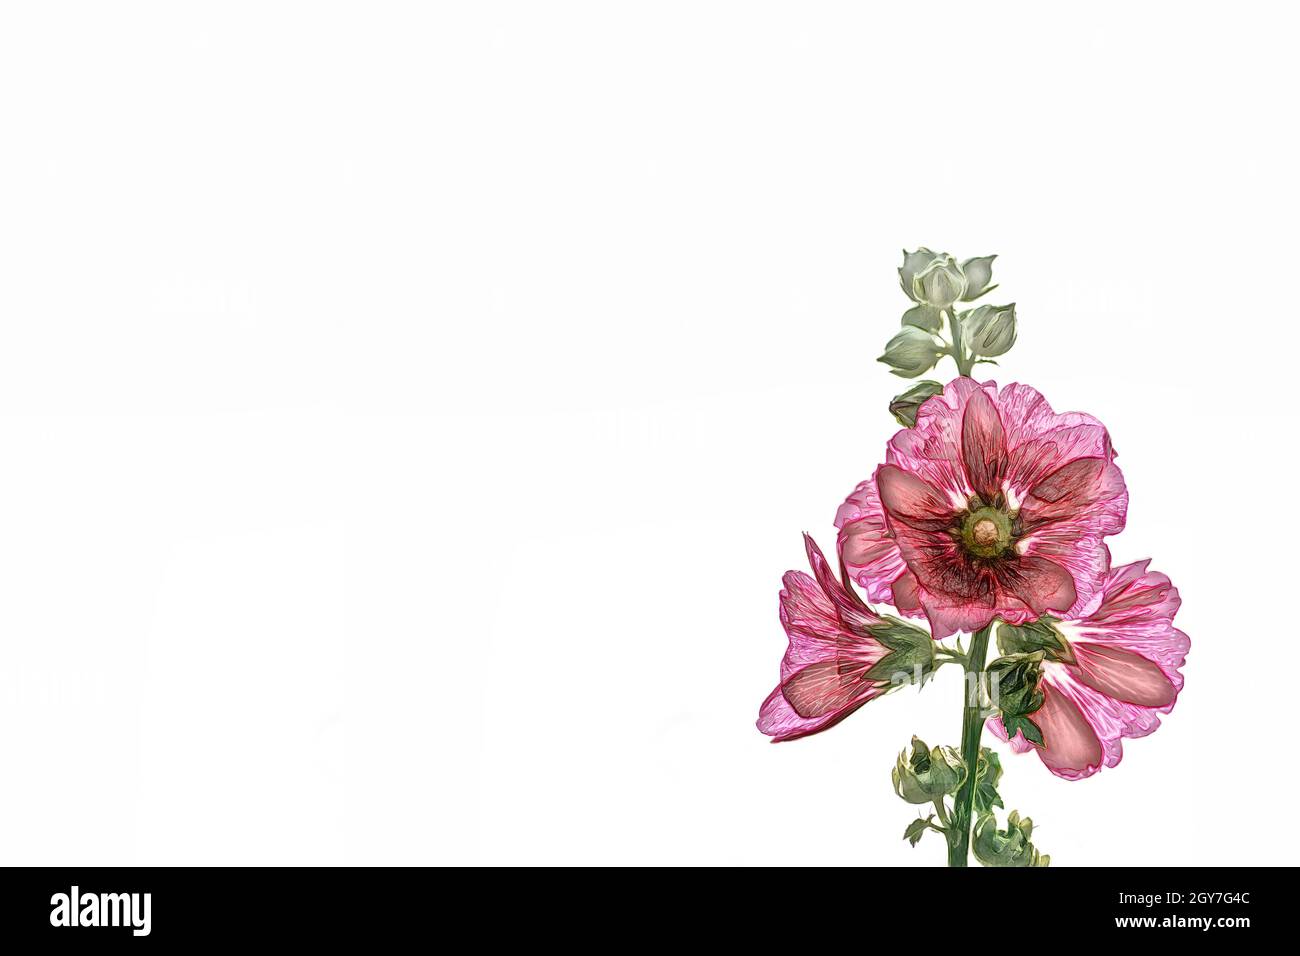 Acquerello hollyhock fiore prominente e bello su uno sfondo bianco. Foto Stock